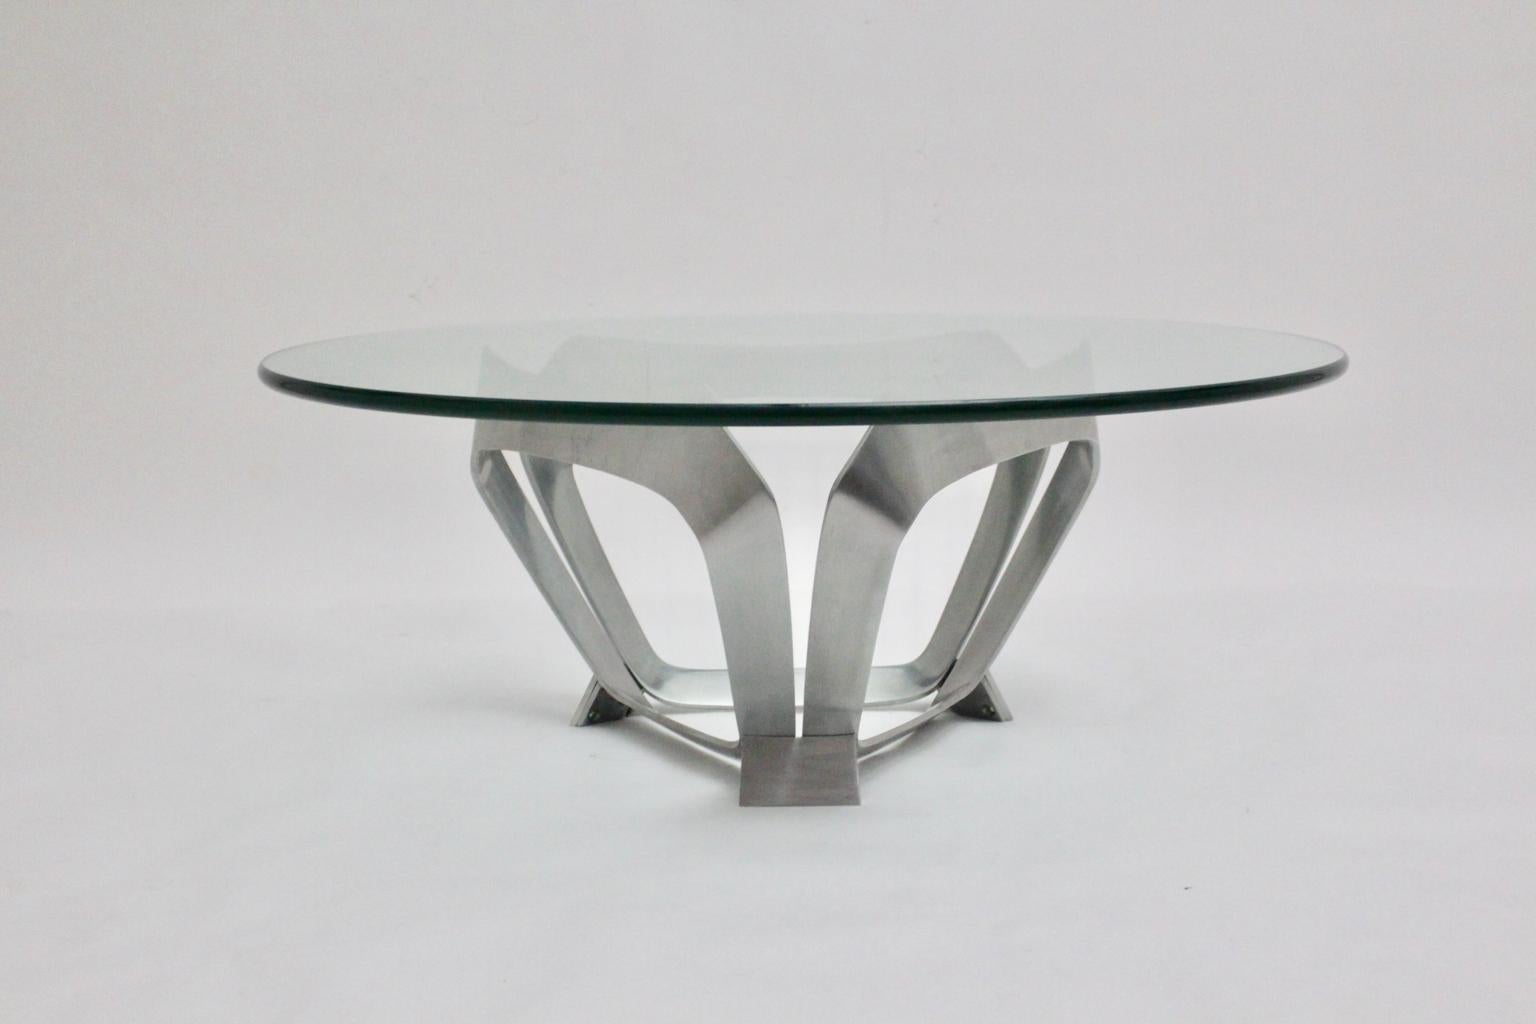 Cette table basse vintage présentée, de style Mid-Century Modern, a été conçue par Knut Hesterberg dans les années 1960 pour Ronald Schmitt en Allemagne. La table basse présente une base en aluminium en forme de triangle avec une plaque de verre